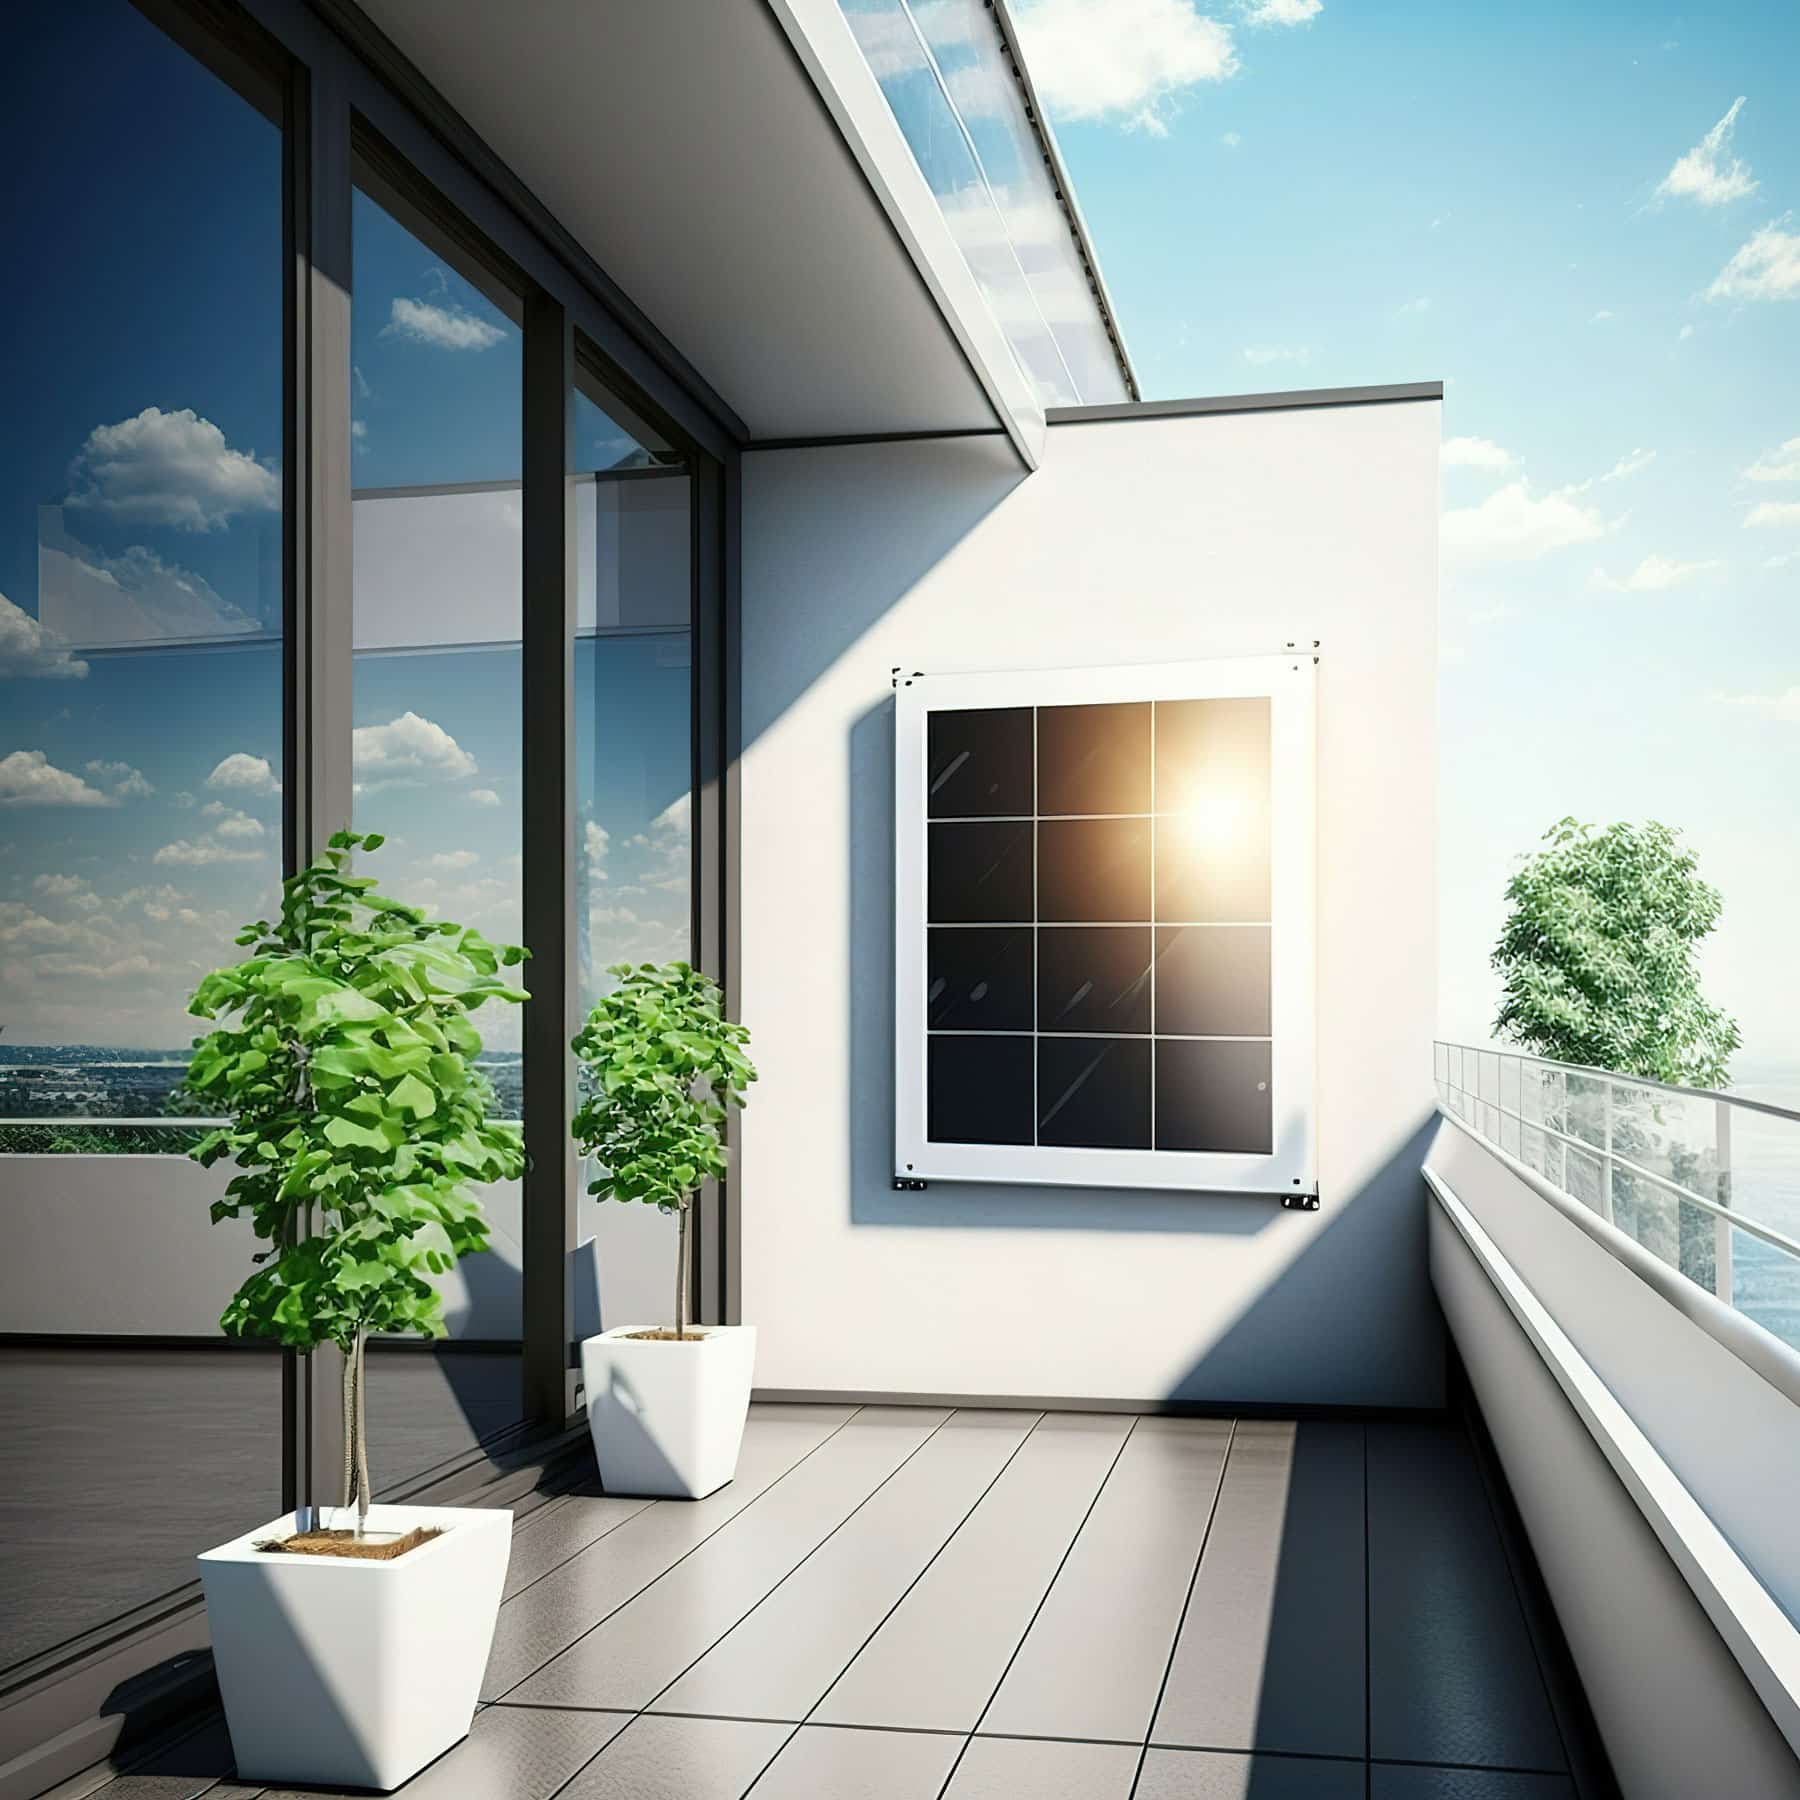 Balkonbild mit zwei kleinen Bäumen und ein Solarmodul an der Hauswand Fassade.